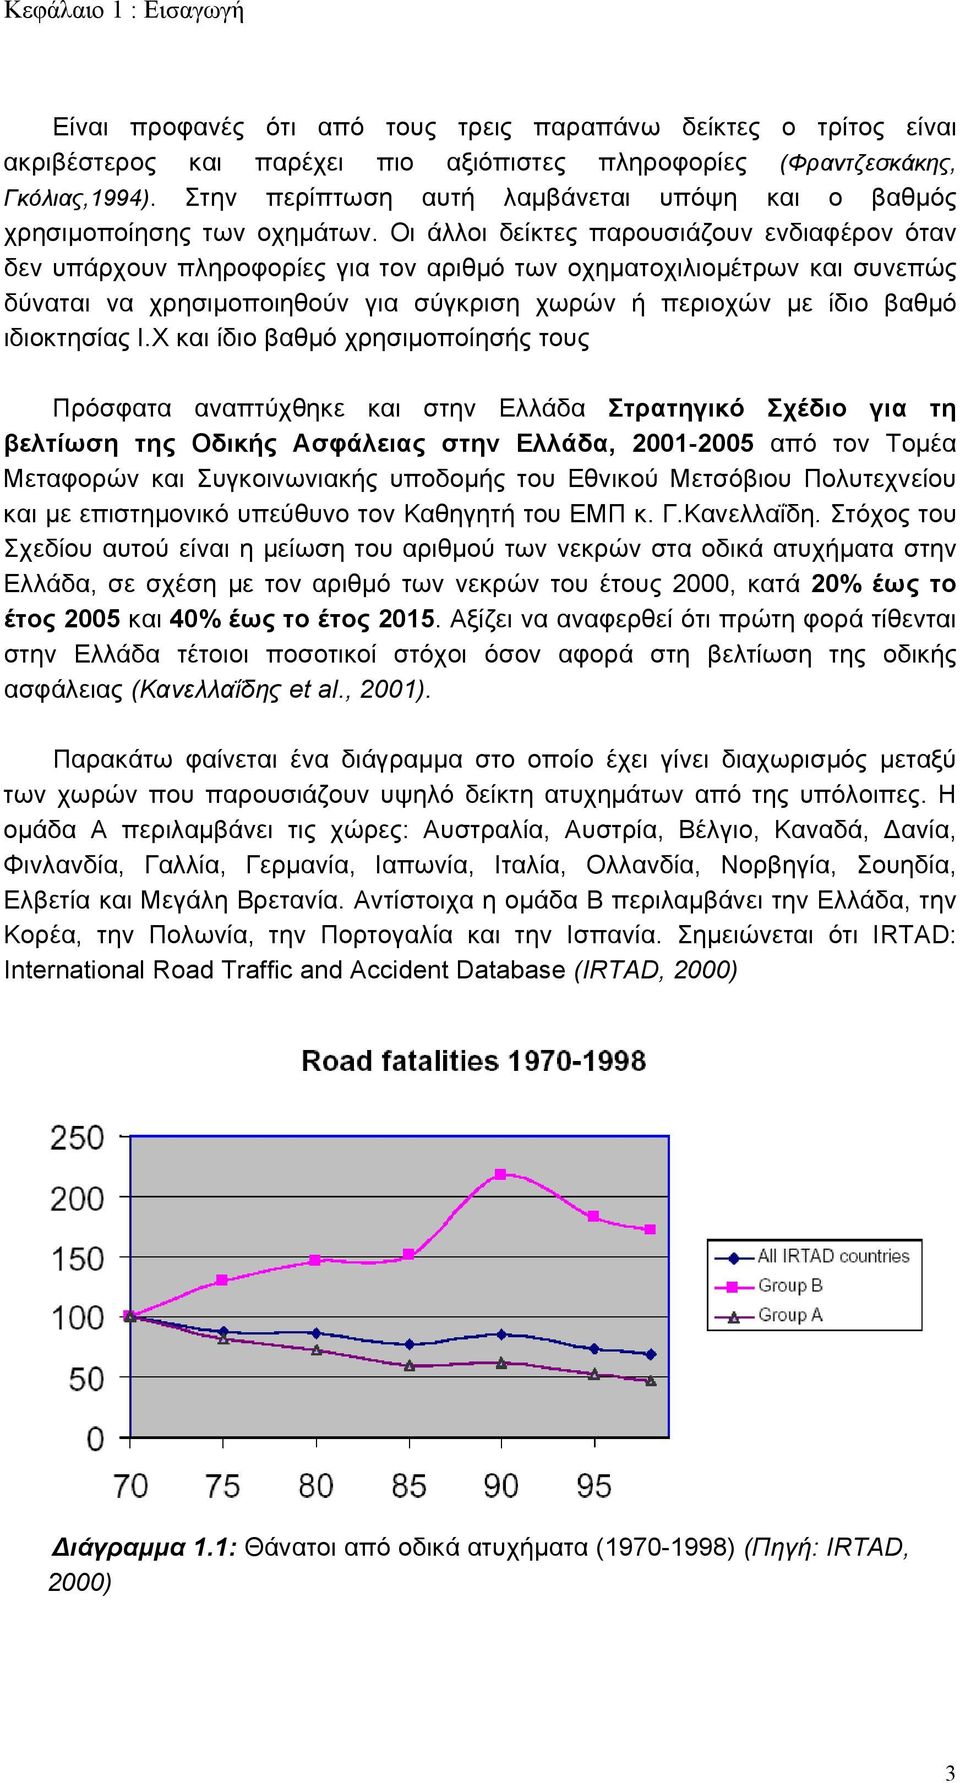 Οι άλλοι δείκτες παρουσιάζουν ενδιαφέρον όταν δεν υπάρχουν πληροφορίες για τον αριθμό των οχηματοχιλιομέτρων και συνεπώς δύναται να χρησιμοποιηθούν για σύγκριση χωρών ή περιοχών με ίδιο βαθμό